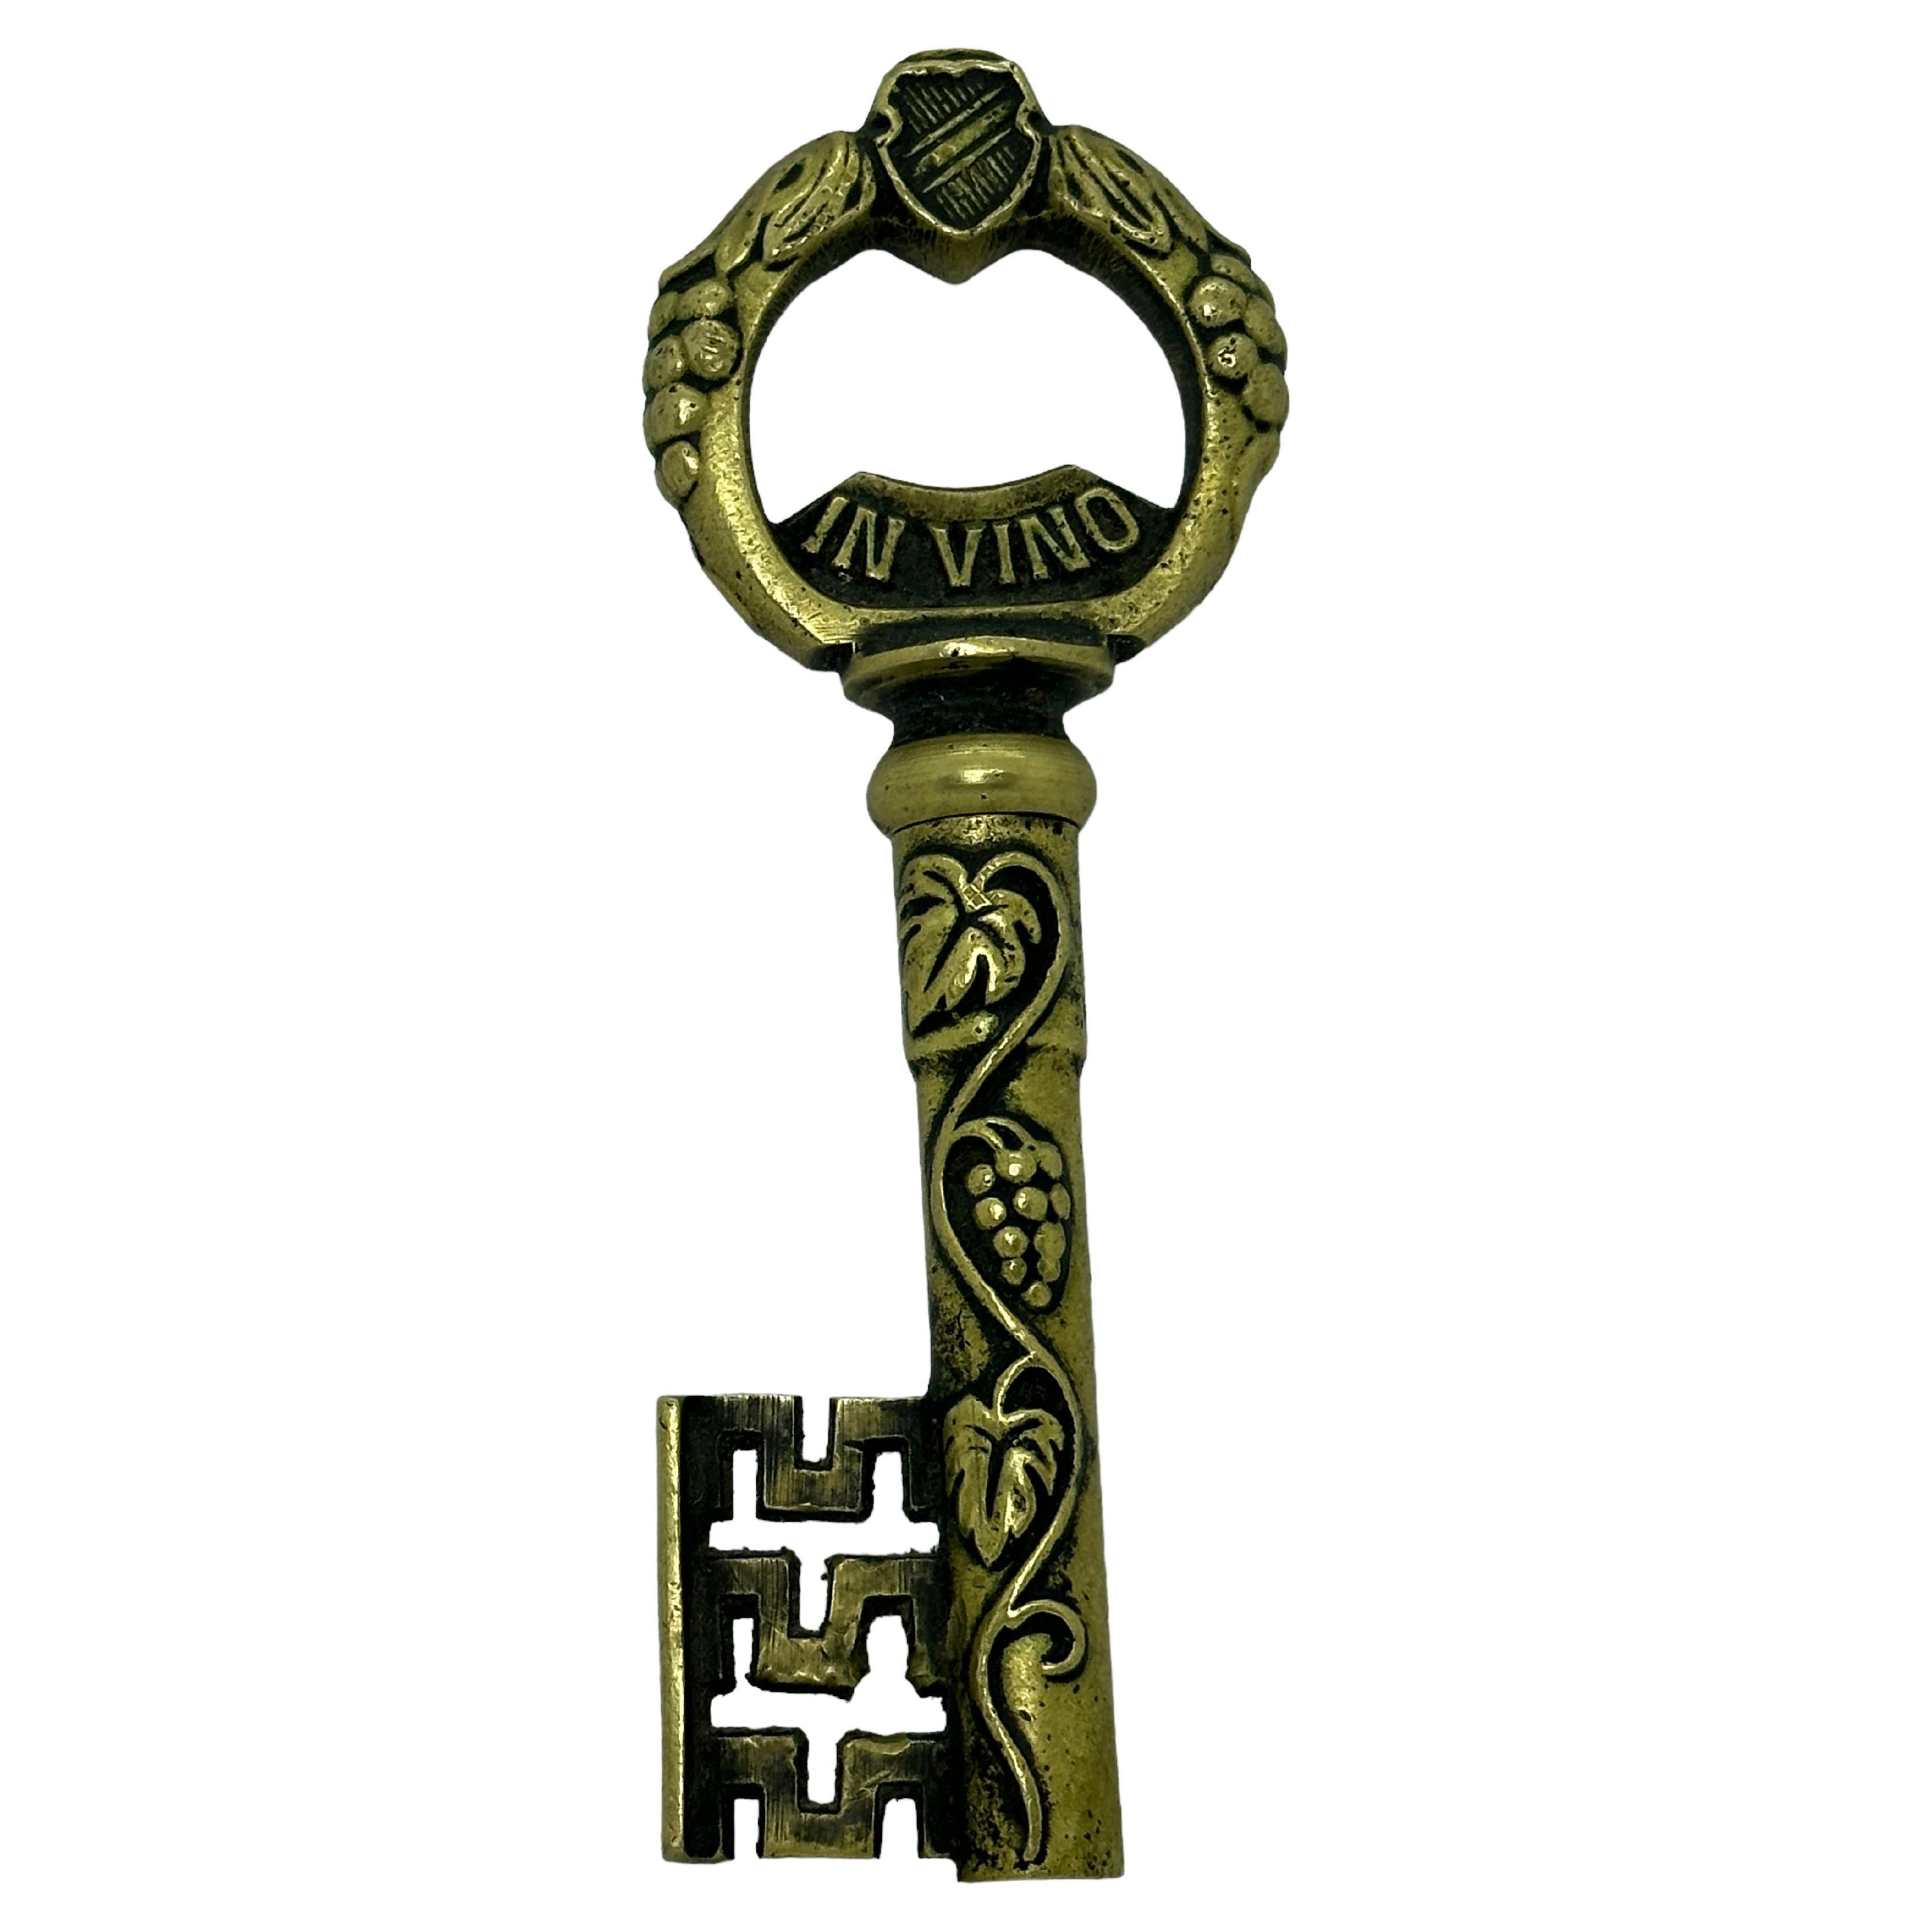 Mid-Century Austrian Brass Key Cork Screw or Bottle Opener